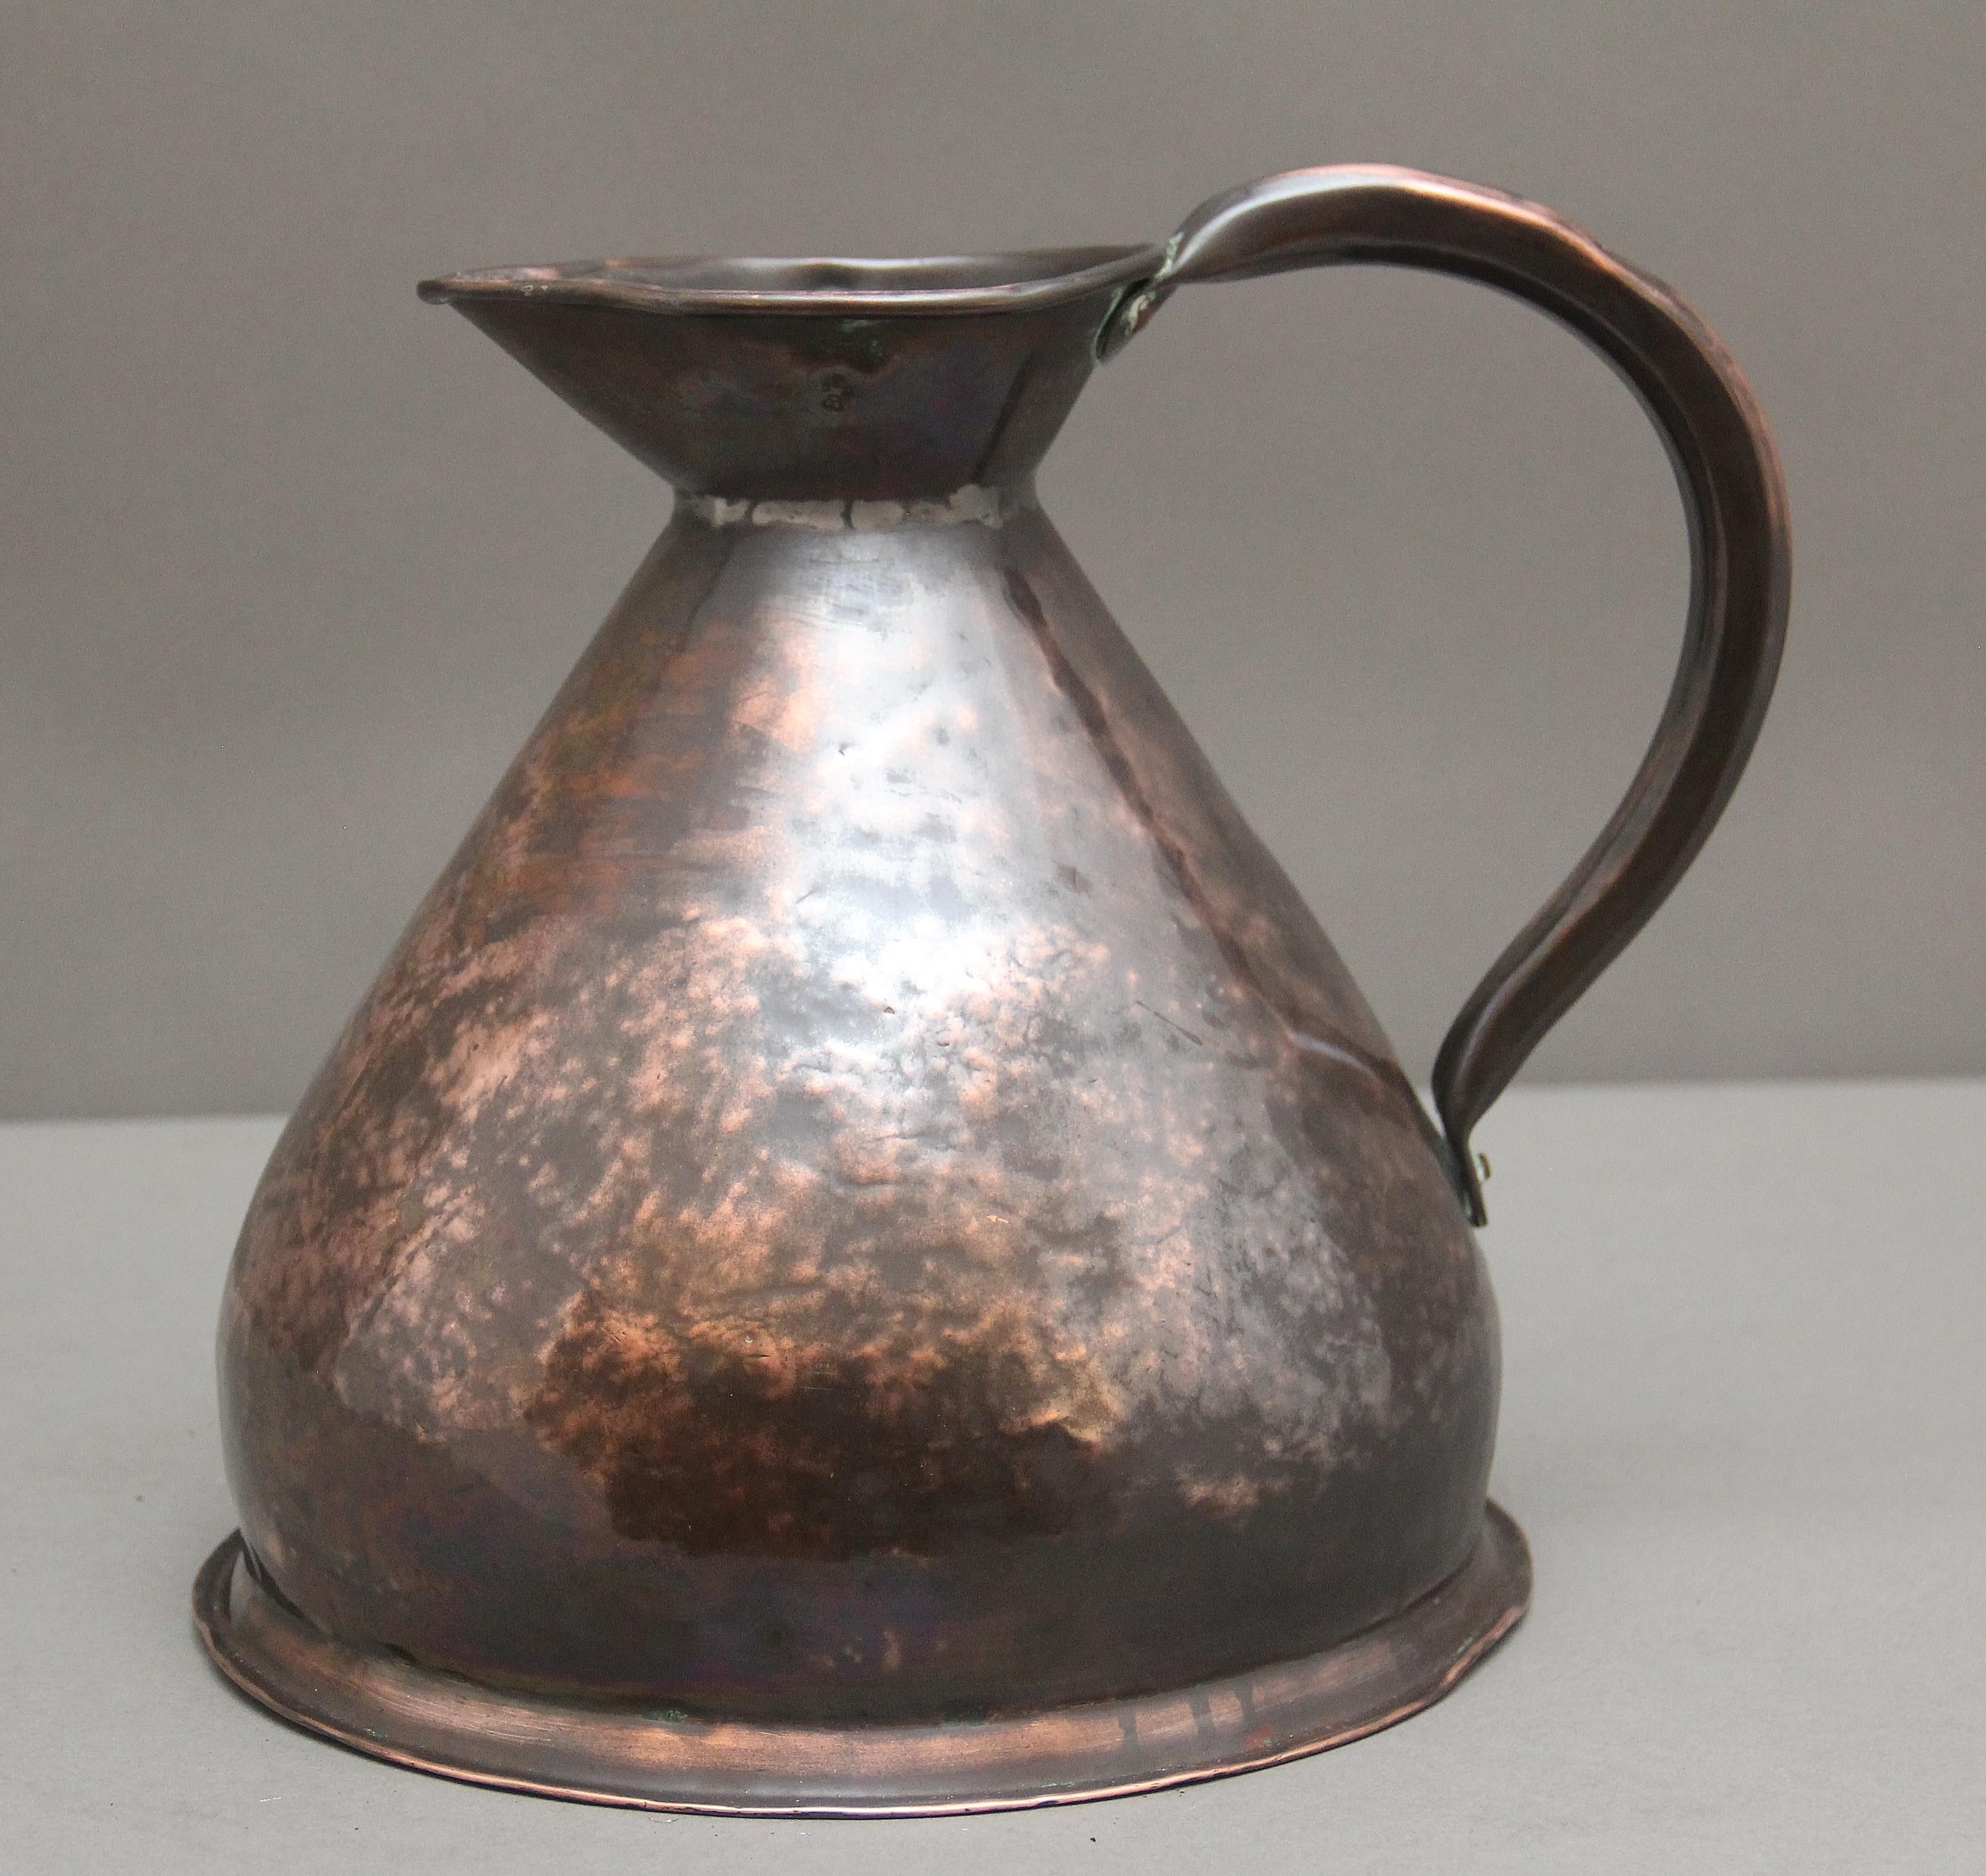 British 19th Century one gallon copper measuring jug